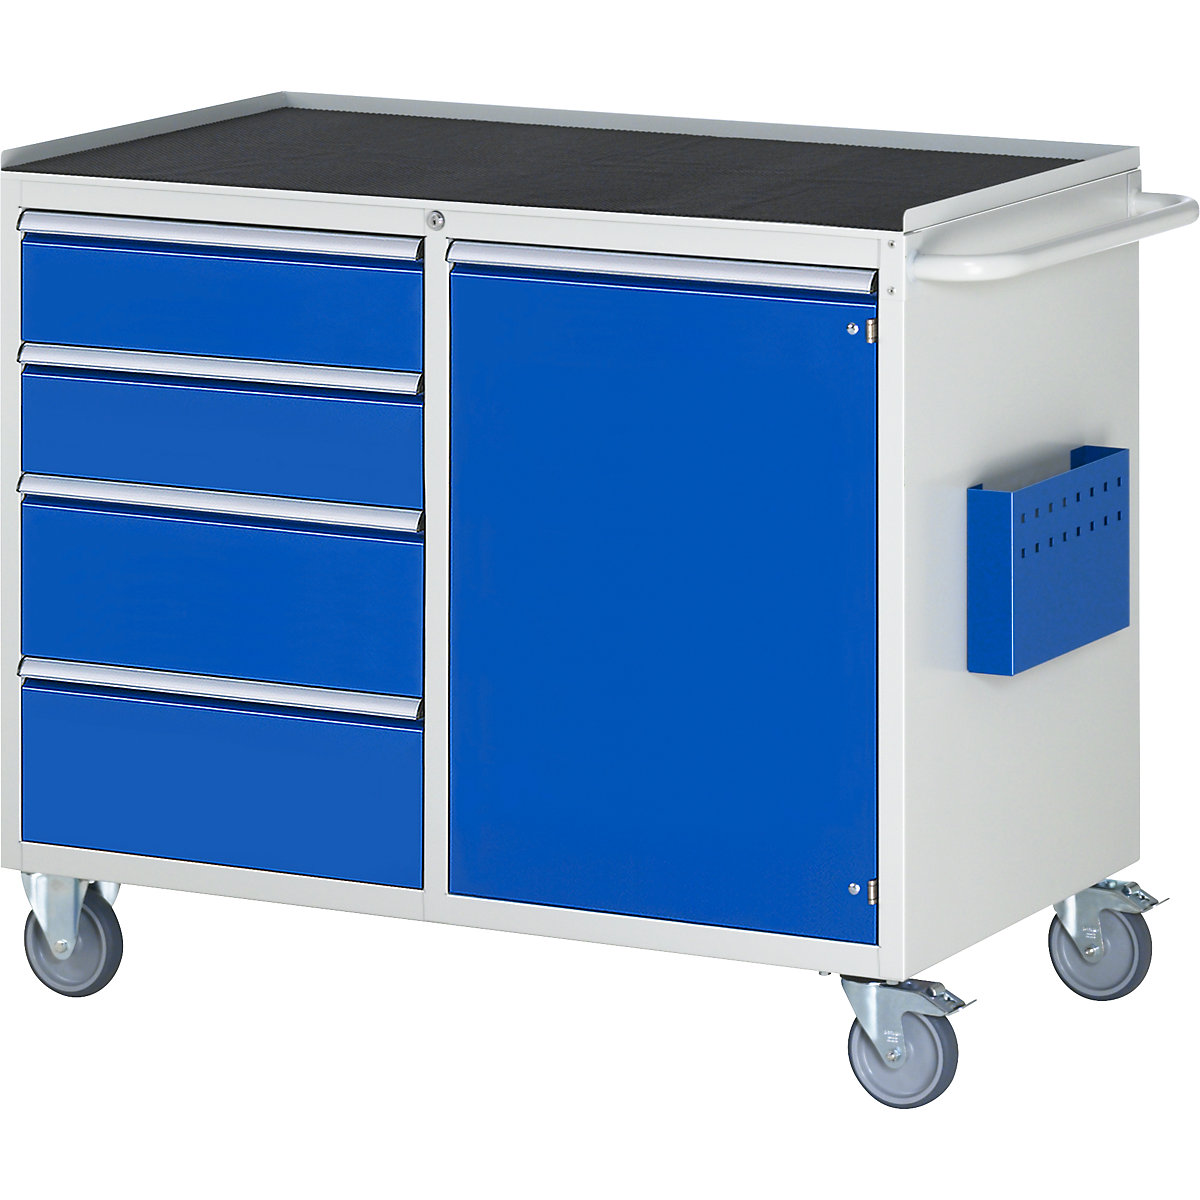 Kompaktne delovne mize, pomične – RAU, 4 predali, 1 vrata, kovinska polica z gumijasto oblogo, svetlo siva / encijan modra-2